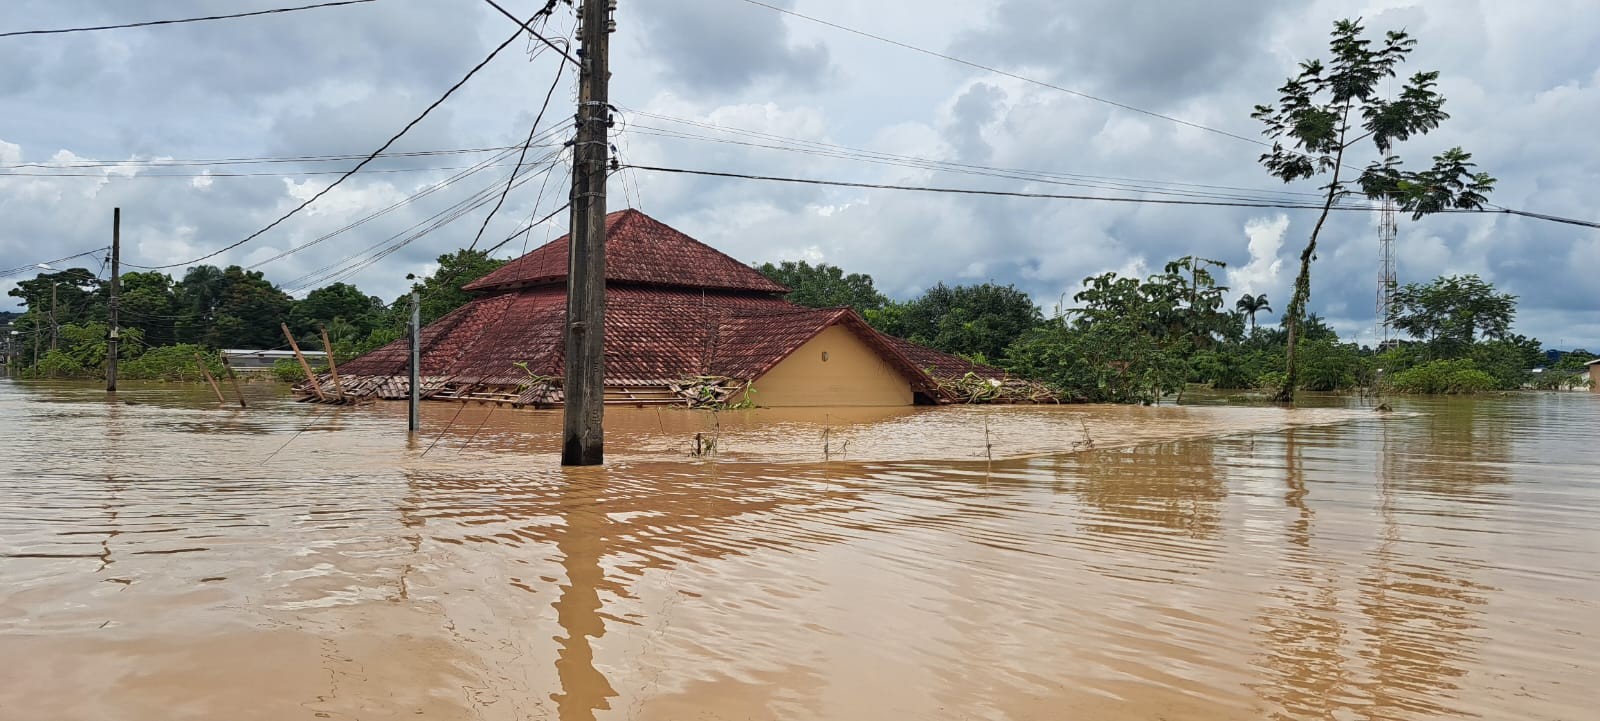 Moradores de cidade que teve 80% da área inundada no Acre podem solicitar FGTS calamidade; saiba como